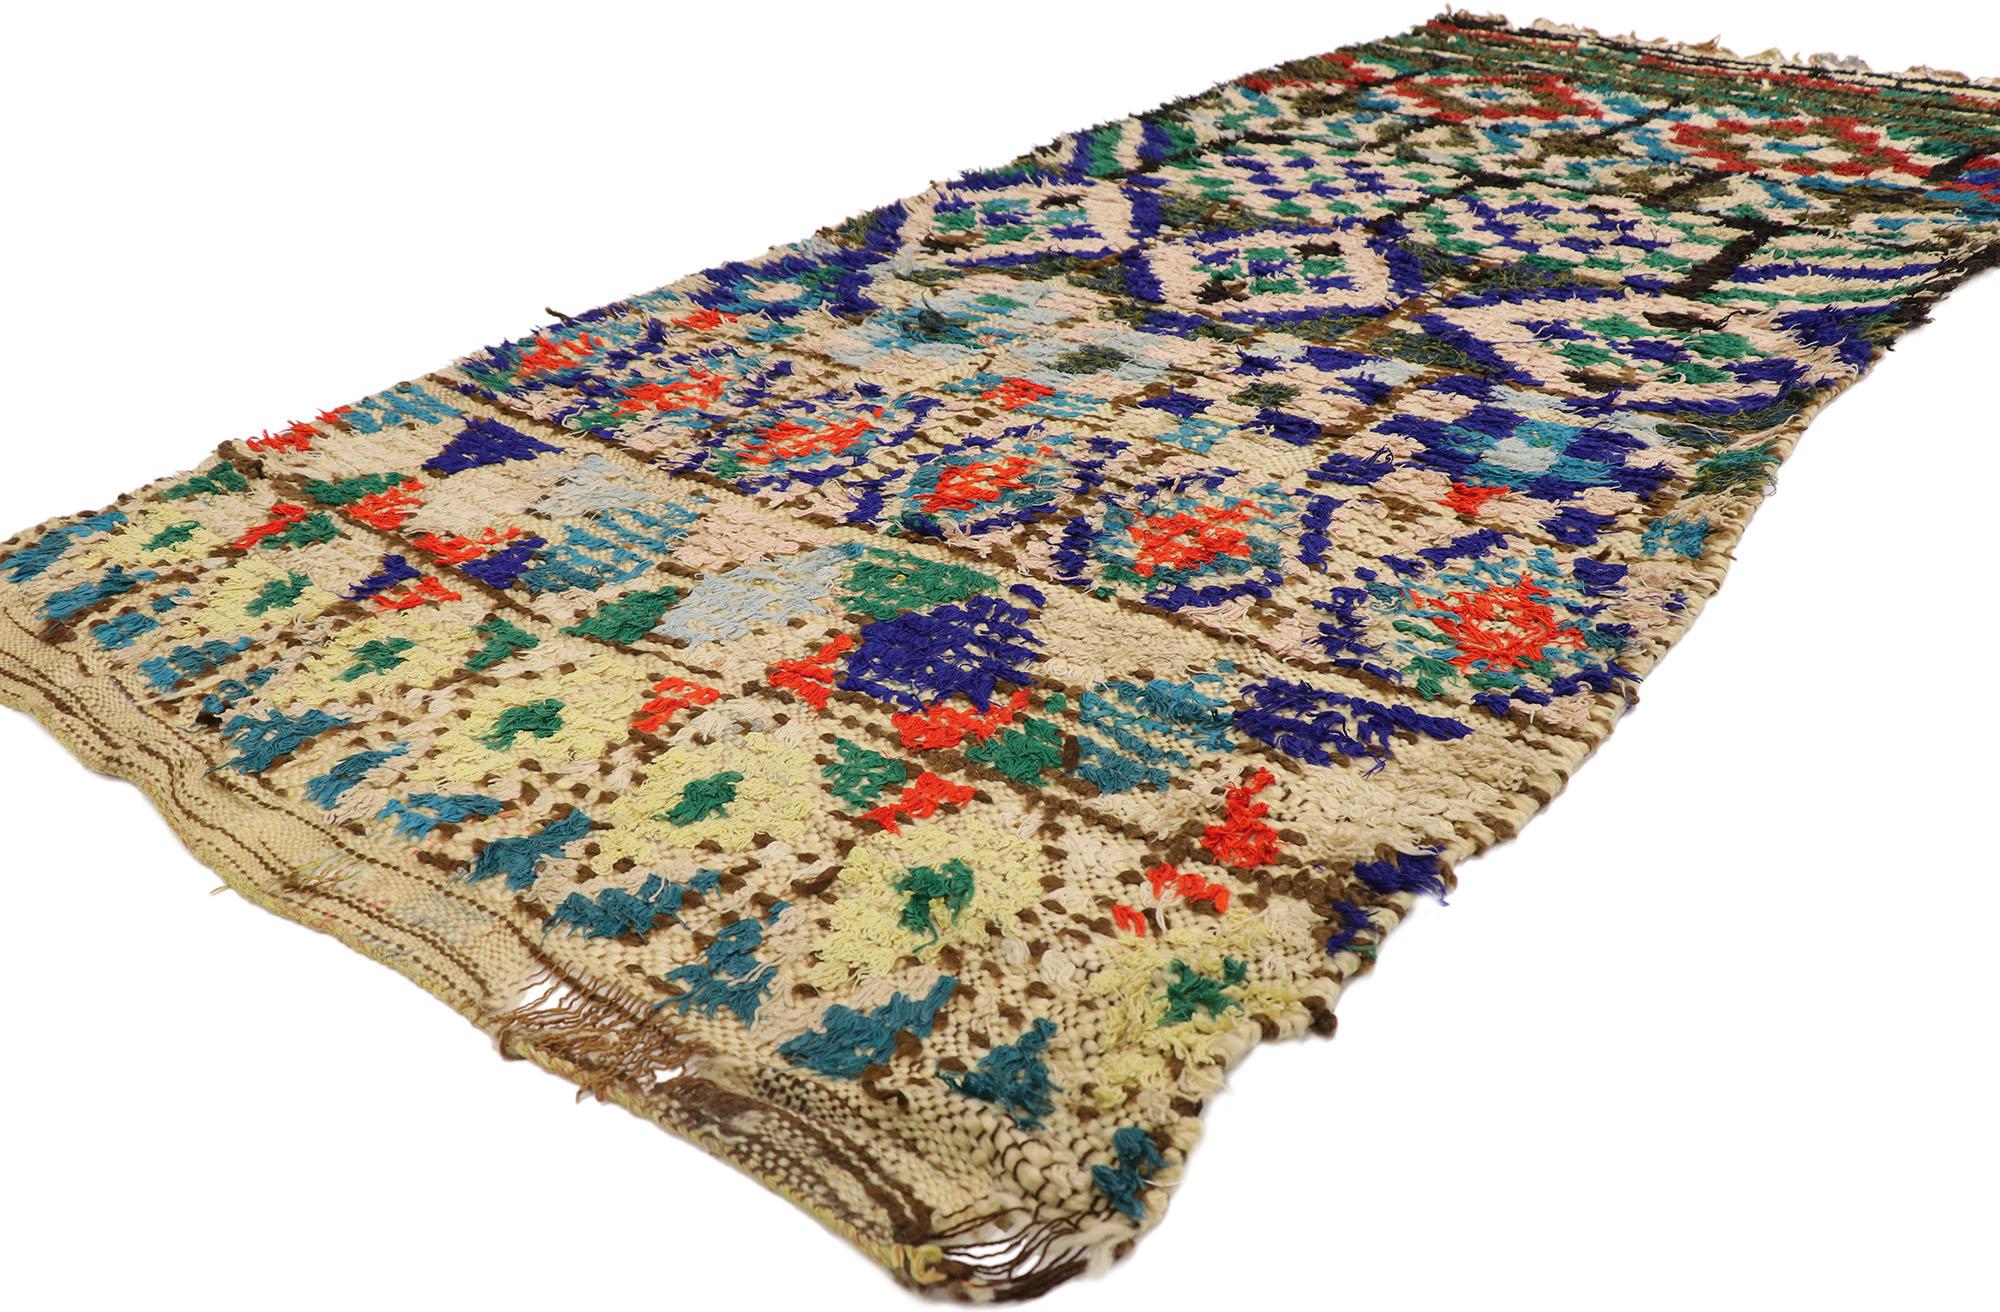 21557 Vintage Marokkanischer Azilal-Teppich, 03'07 x 08'00.
Gypset Boho trifft auf rustikalen Dschungel in diesem handgeknüpften marokkanischen Azilal-Teppich aus Berberwolle. Das auffällige geometrische Design und die kräftige Farbpalette, die in